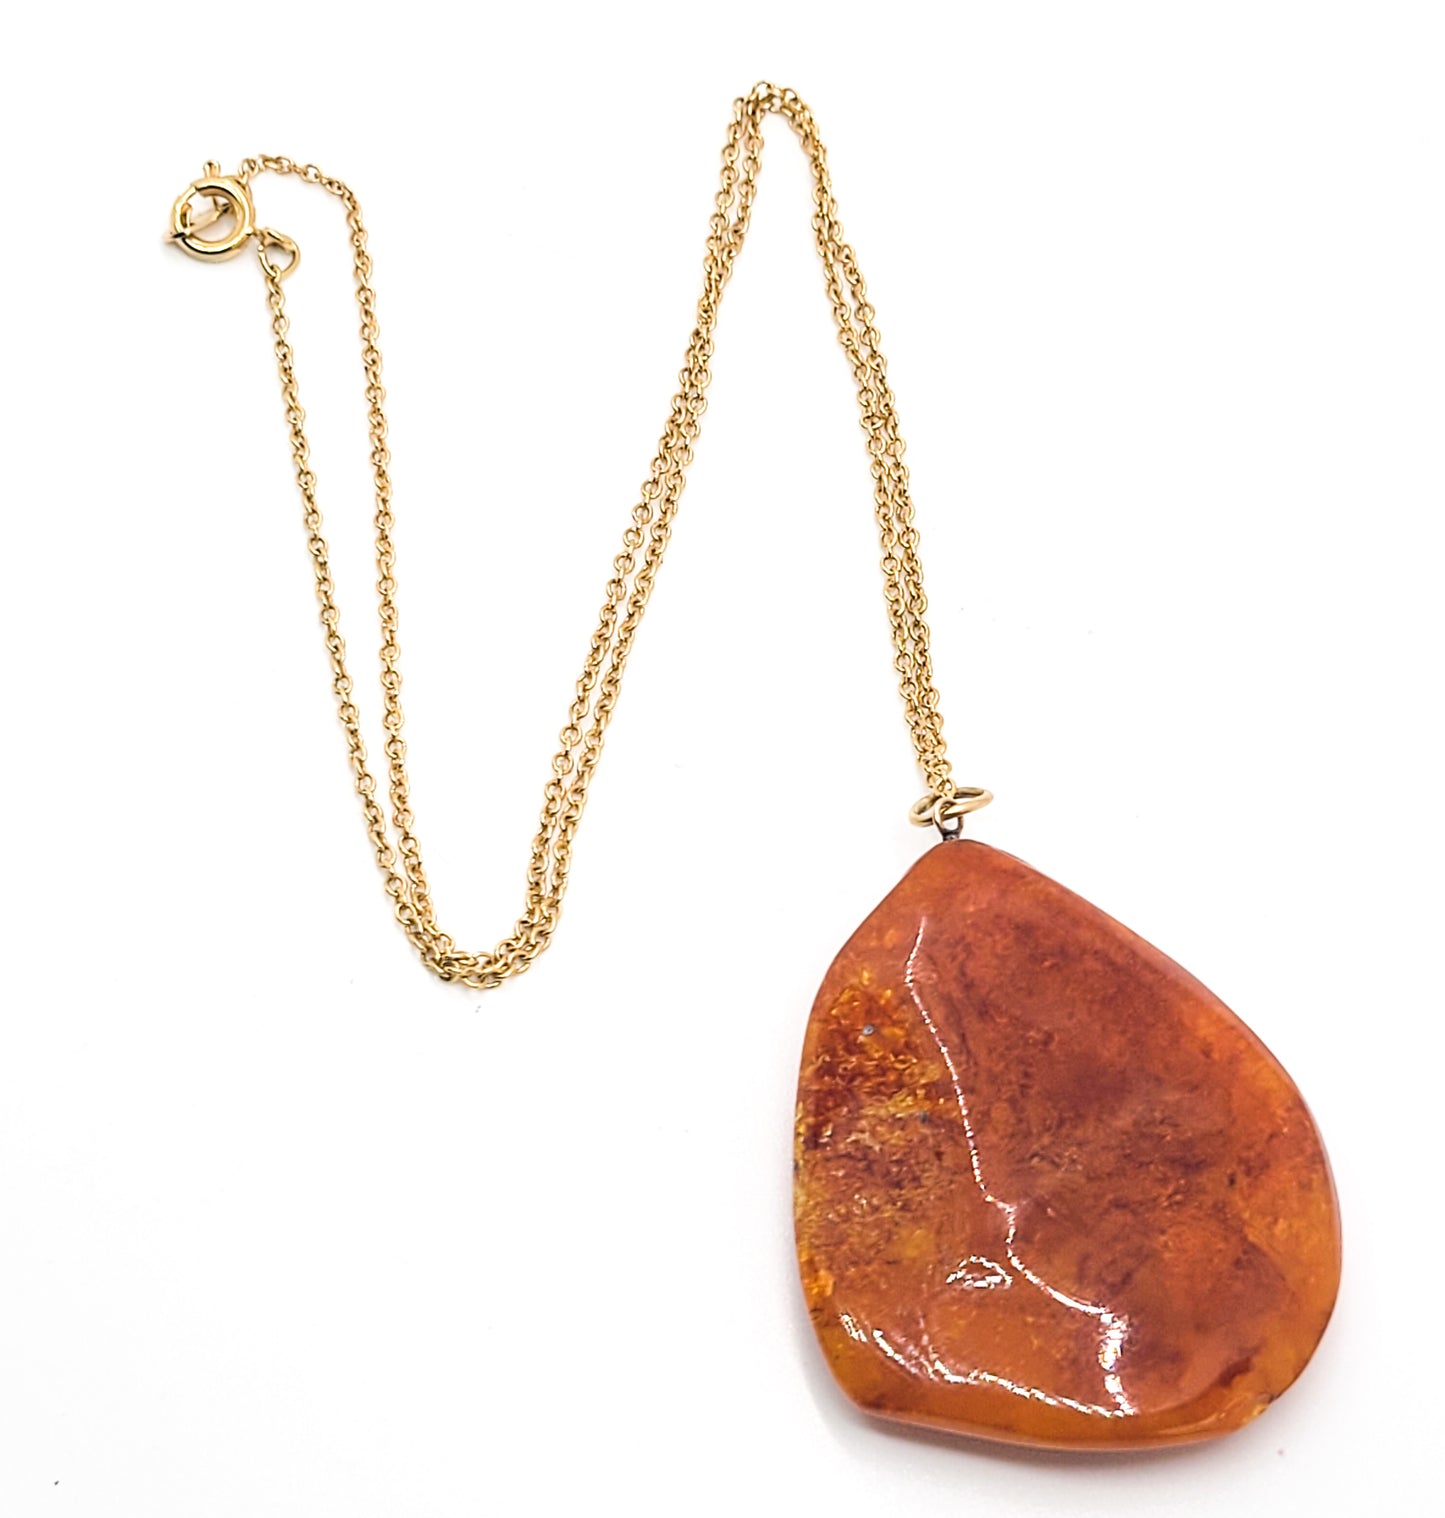 Baltic Amber vintage large polished natural gemstone nugget pendant necklace